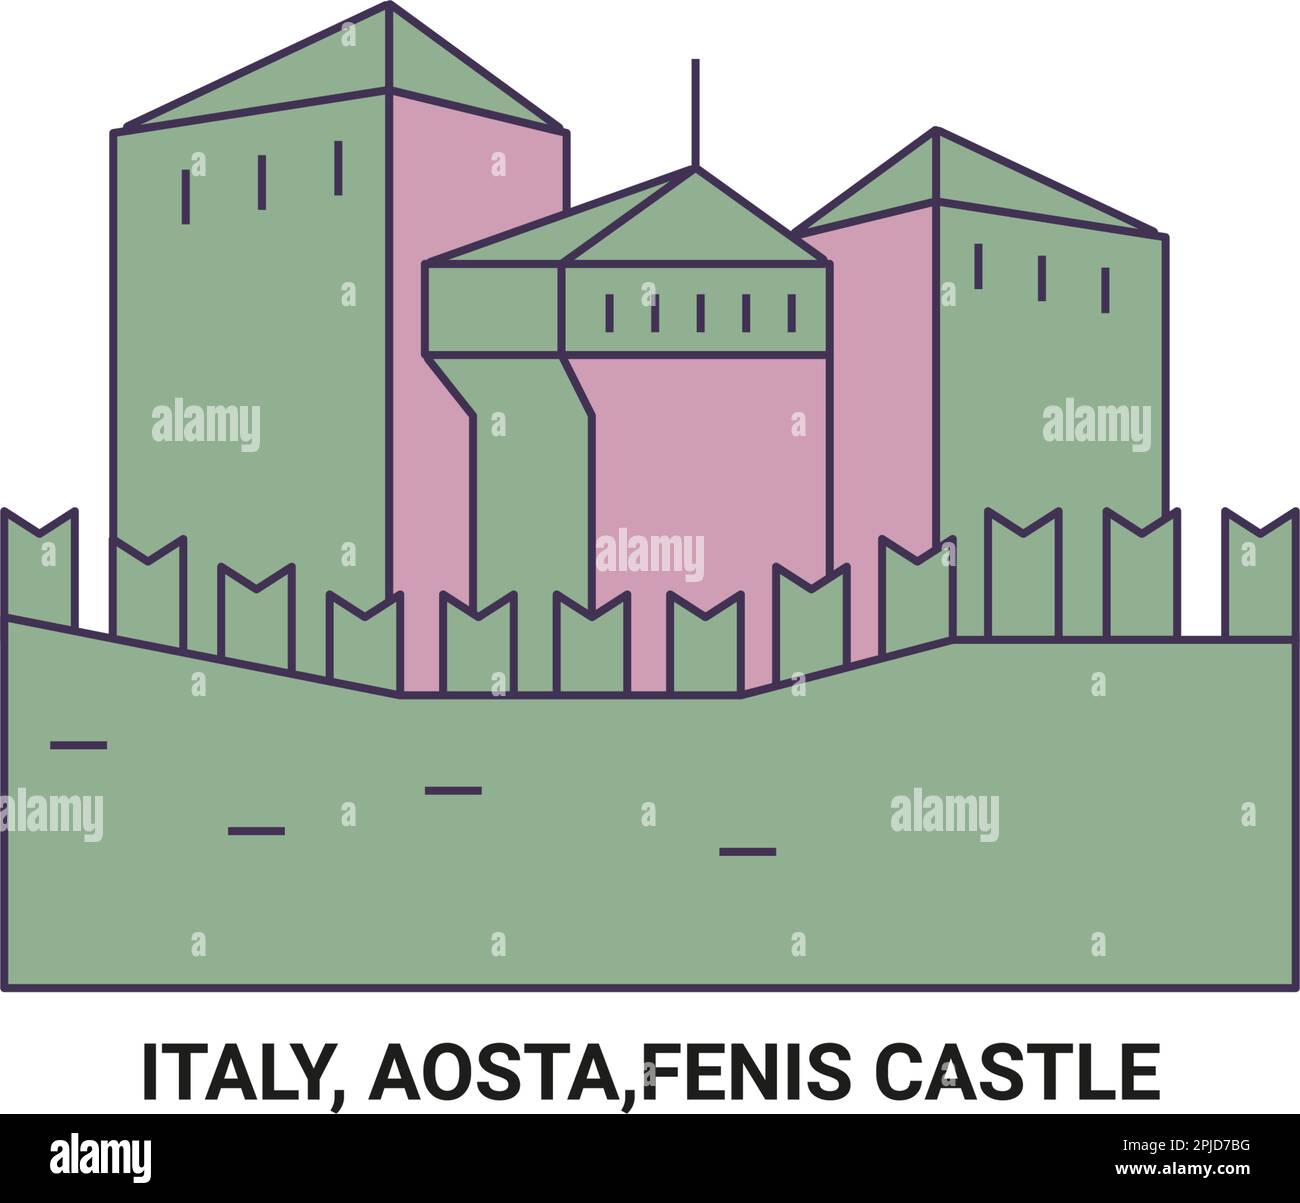 Italie, Aoste,F, NIS Château Voyage repère illustration vecteur Illustration de Vecteur